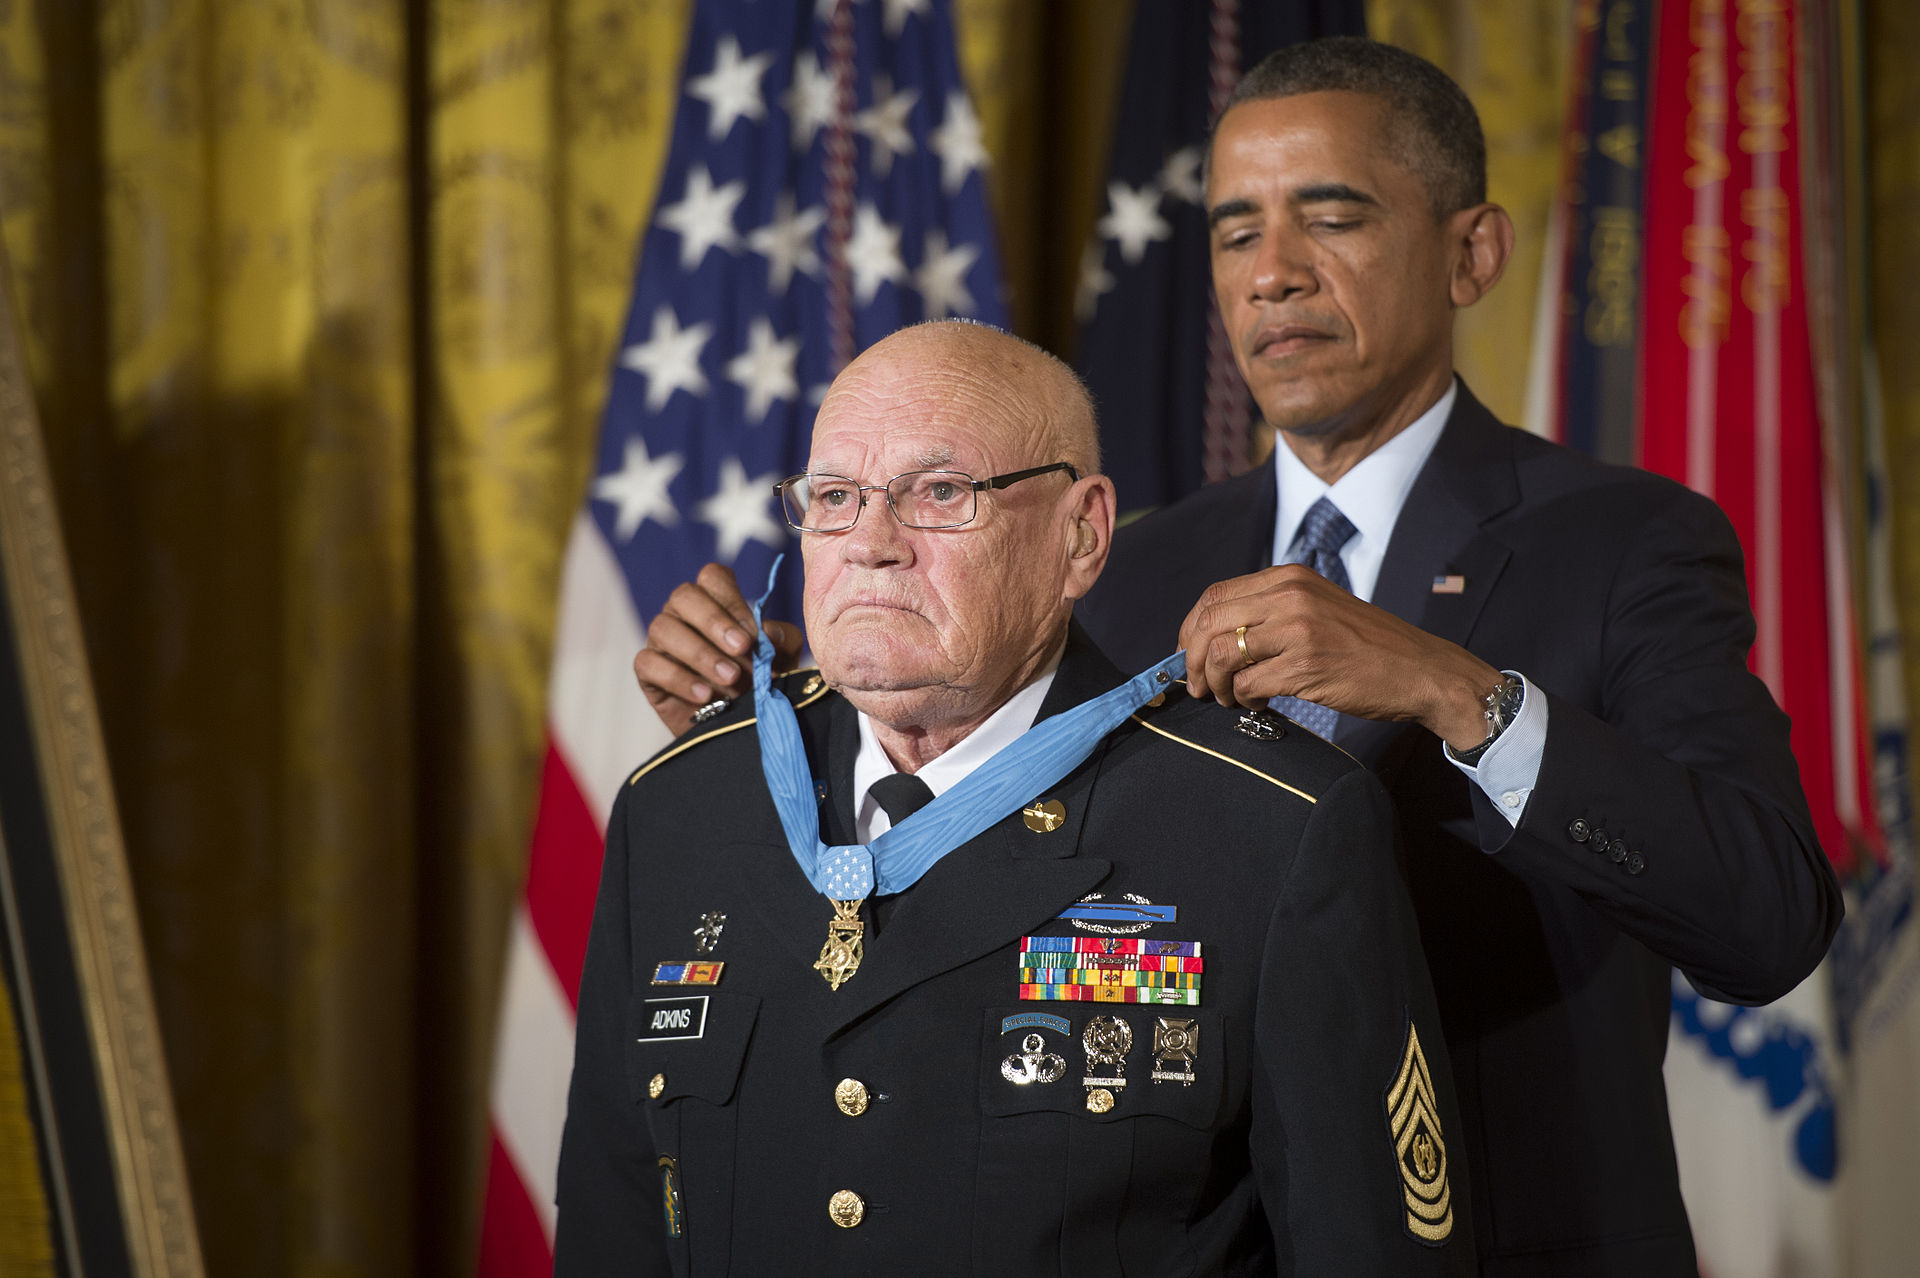 Bennie Gene Adkins medal of honor